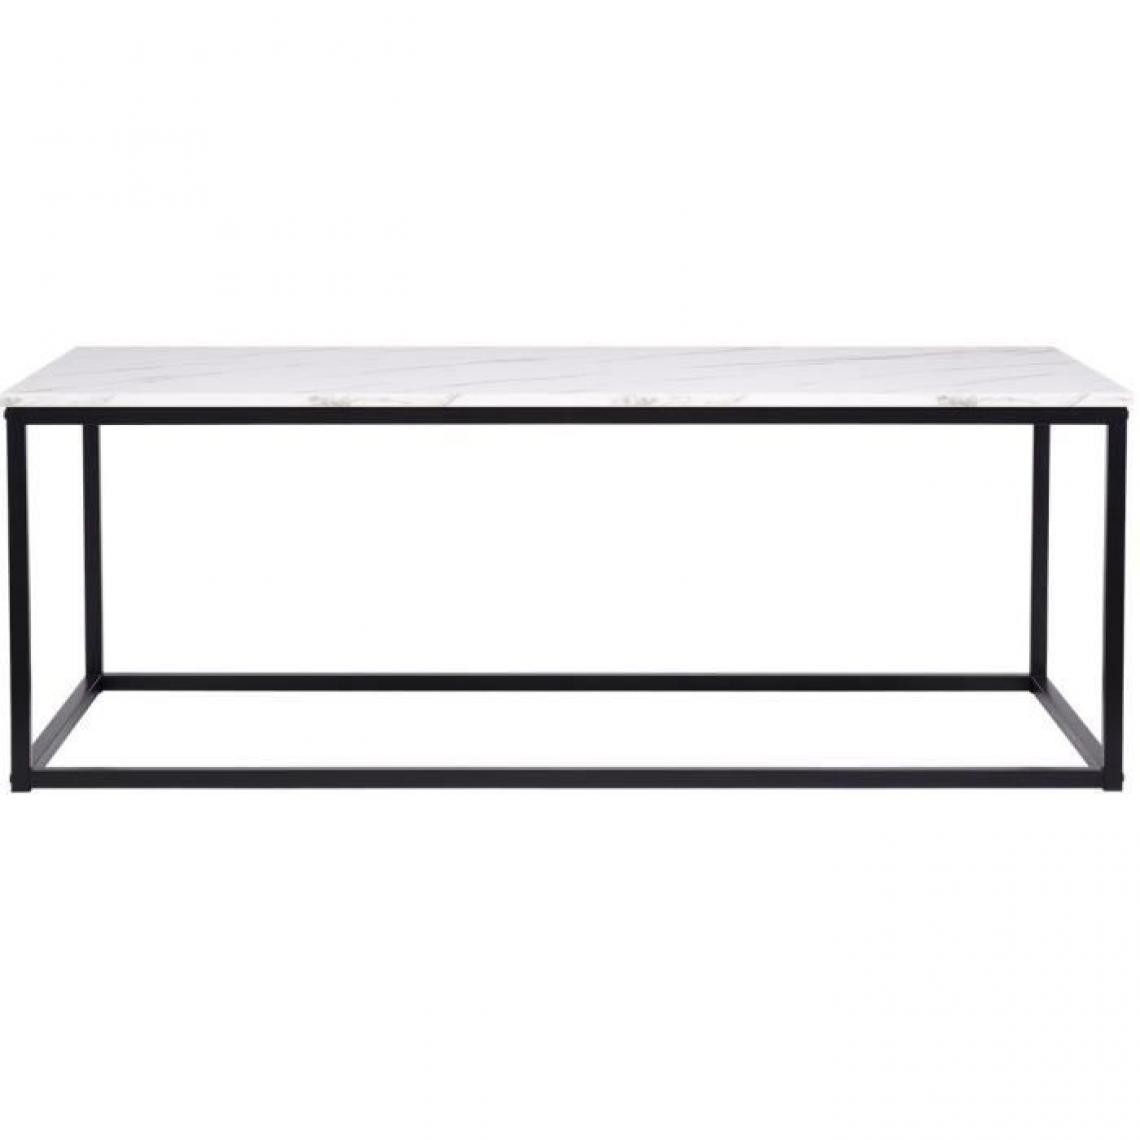 Cstore - Table basse rectangulaire - décors marbre piètement métal noir - L 120 x l 60 x H 43 cm - MABLE - Tables basses